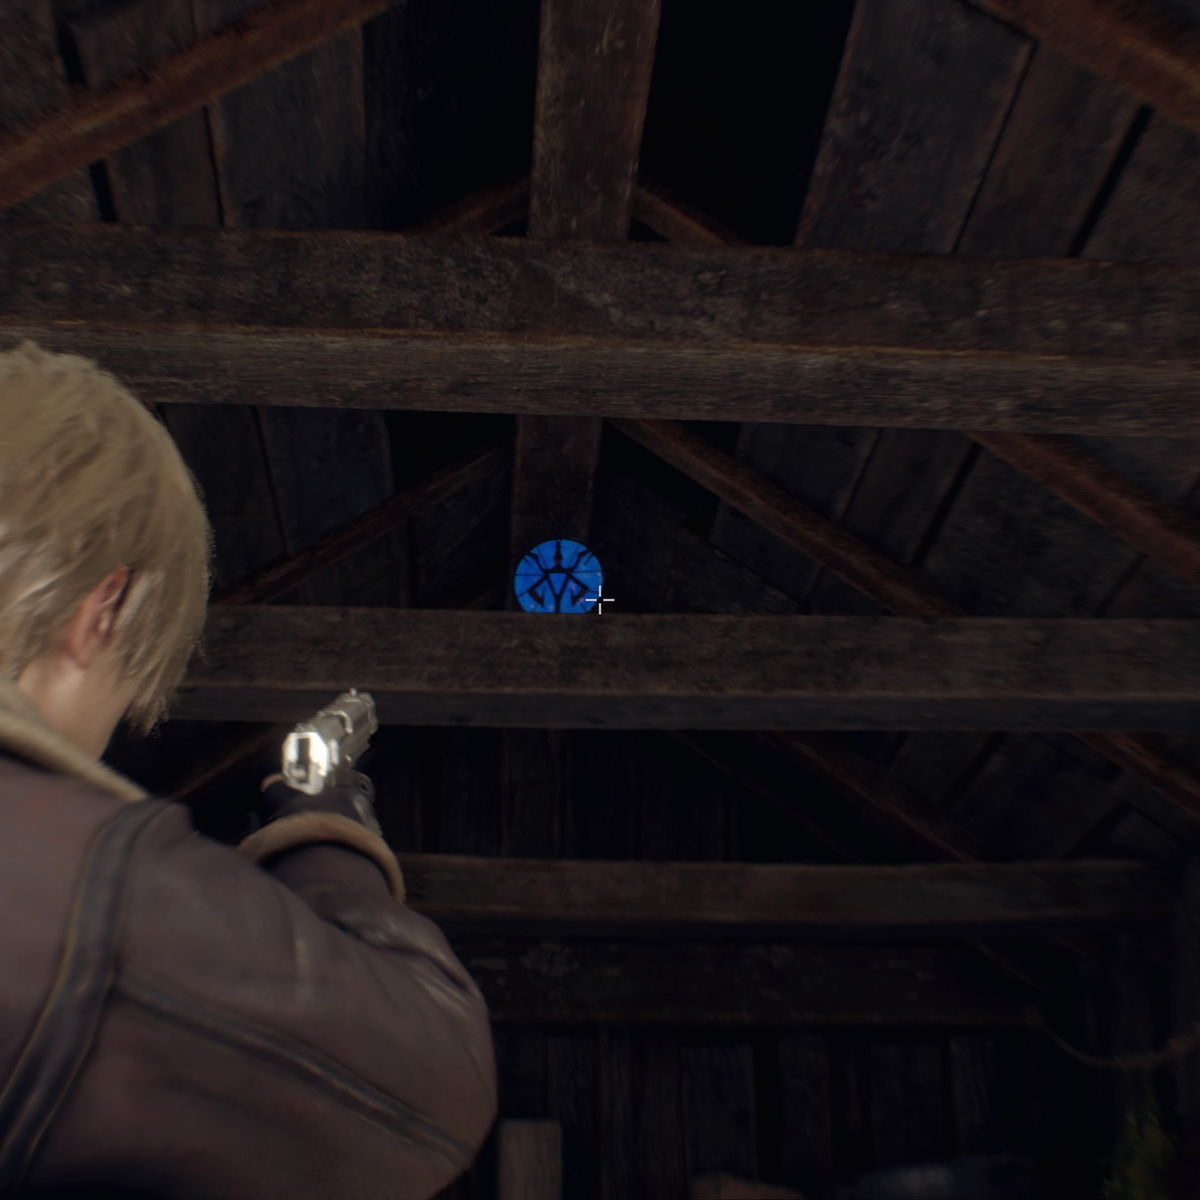 Синие медальоны в resident evil. Синие медальоны в Resident Evil 4 Remake. Resident Evil 4 синие медальоны ферма. Резидент 4 ремейк. Резидент ивел 4 ремейк медальоны на ферме.